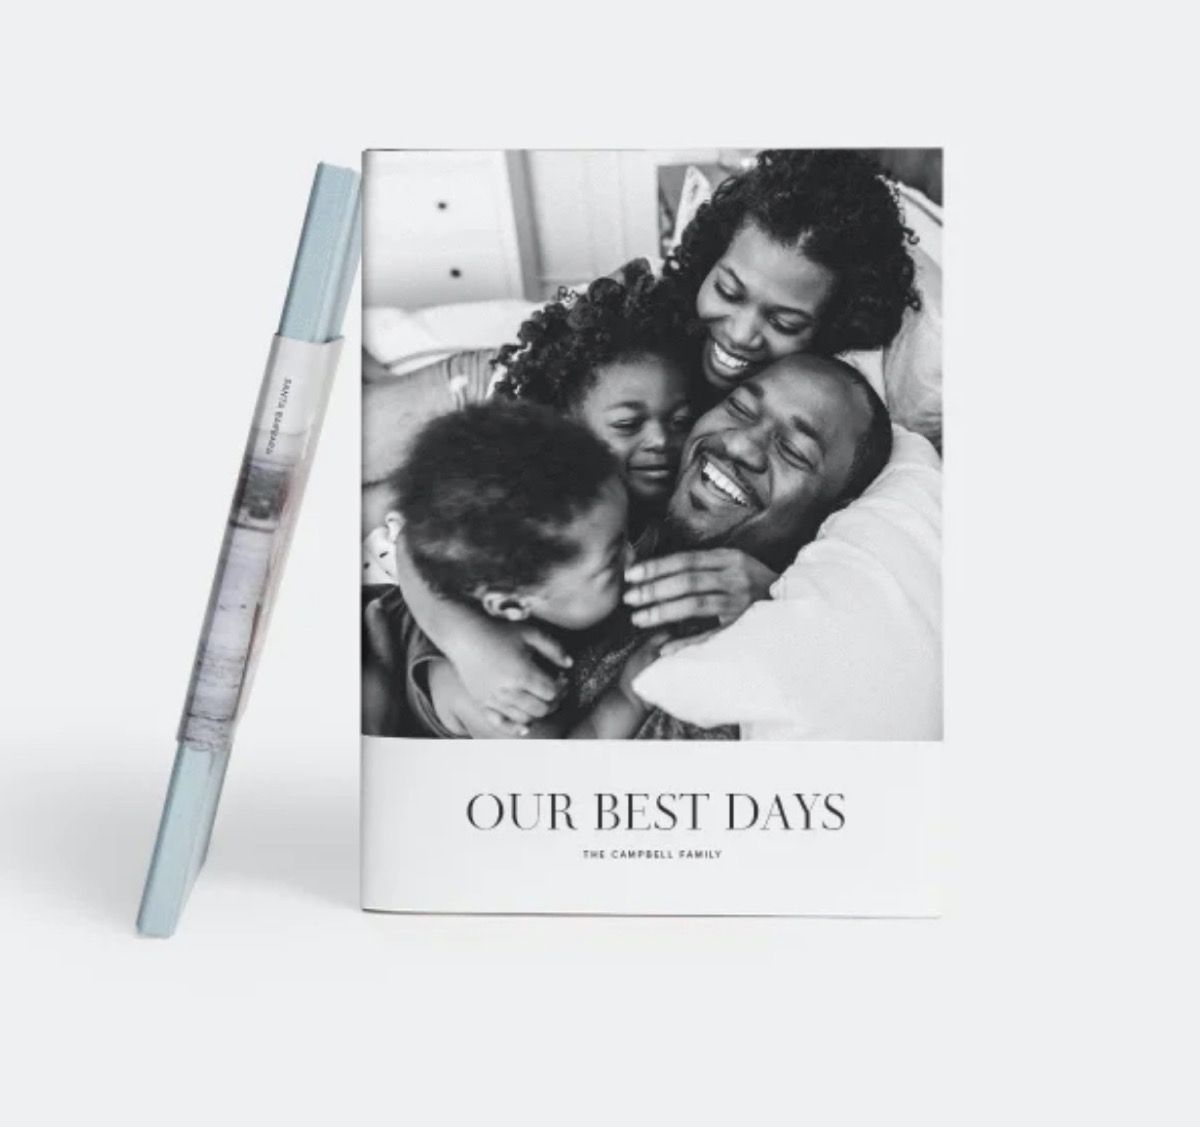 ספר תמונות עם משפחה שחורה ומחייכת בצילום שחור-לבן על הכריכה